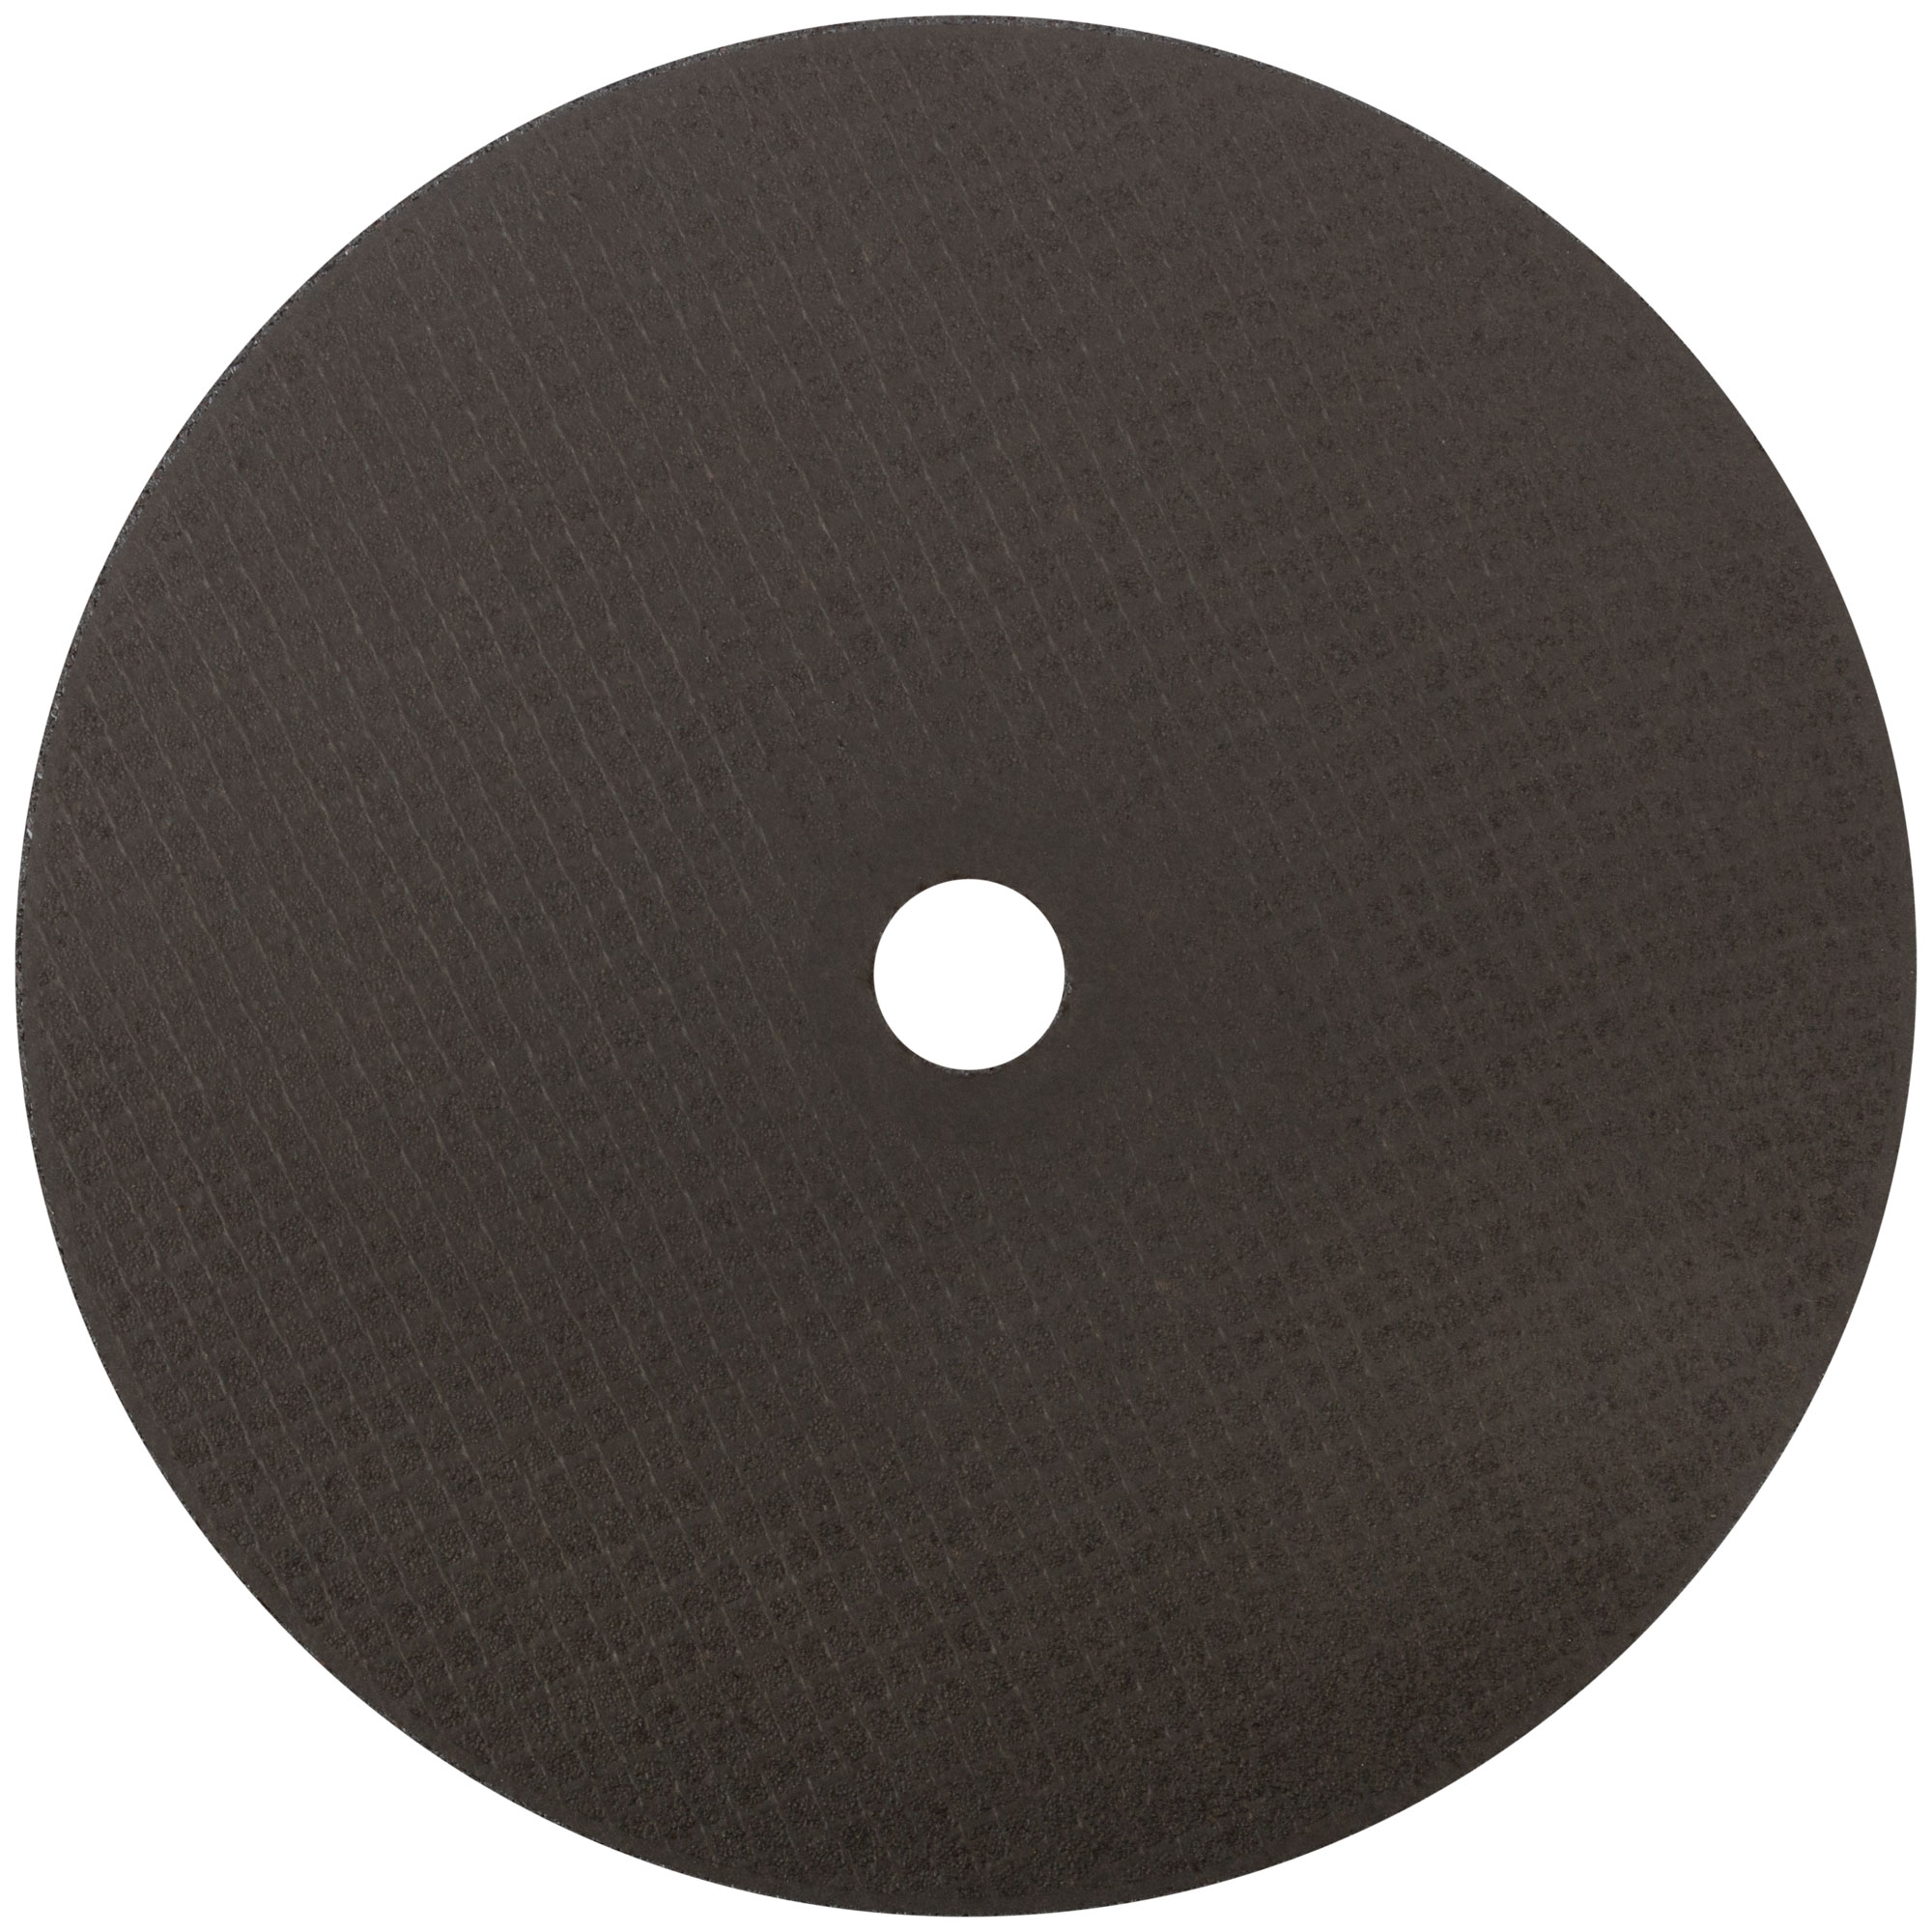 Профессиональный диск отрезной по металлу и нержавеющей стали Т41-230 х 2,0 х 22,2 мм Cutop Profi Plus